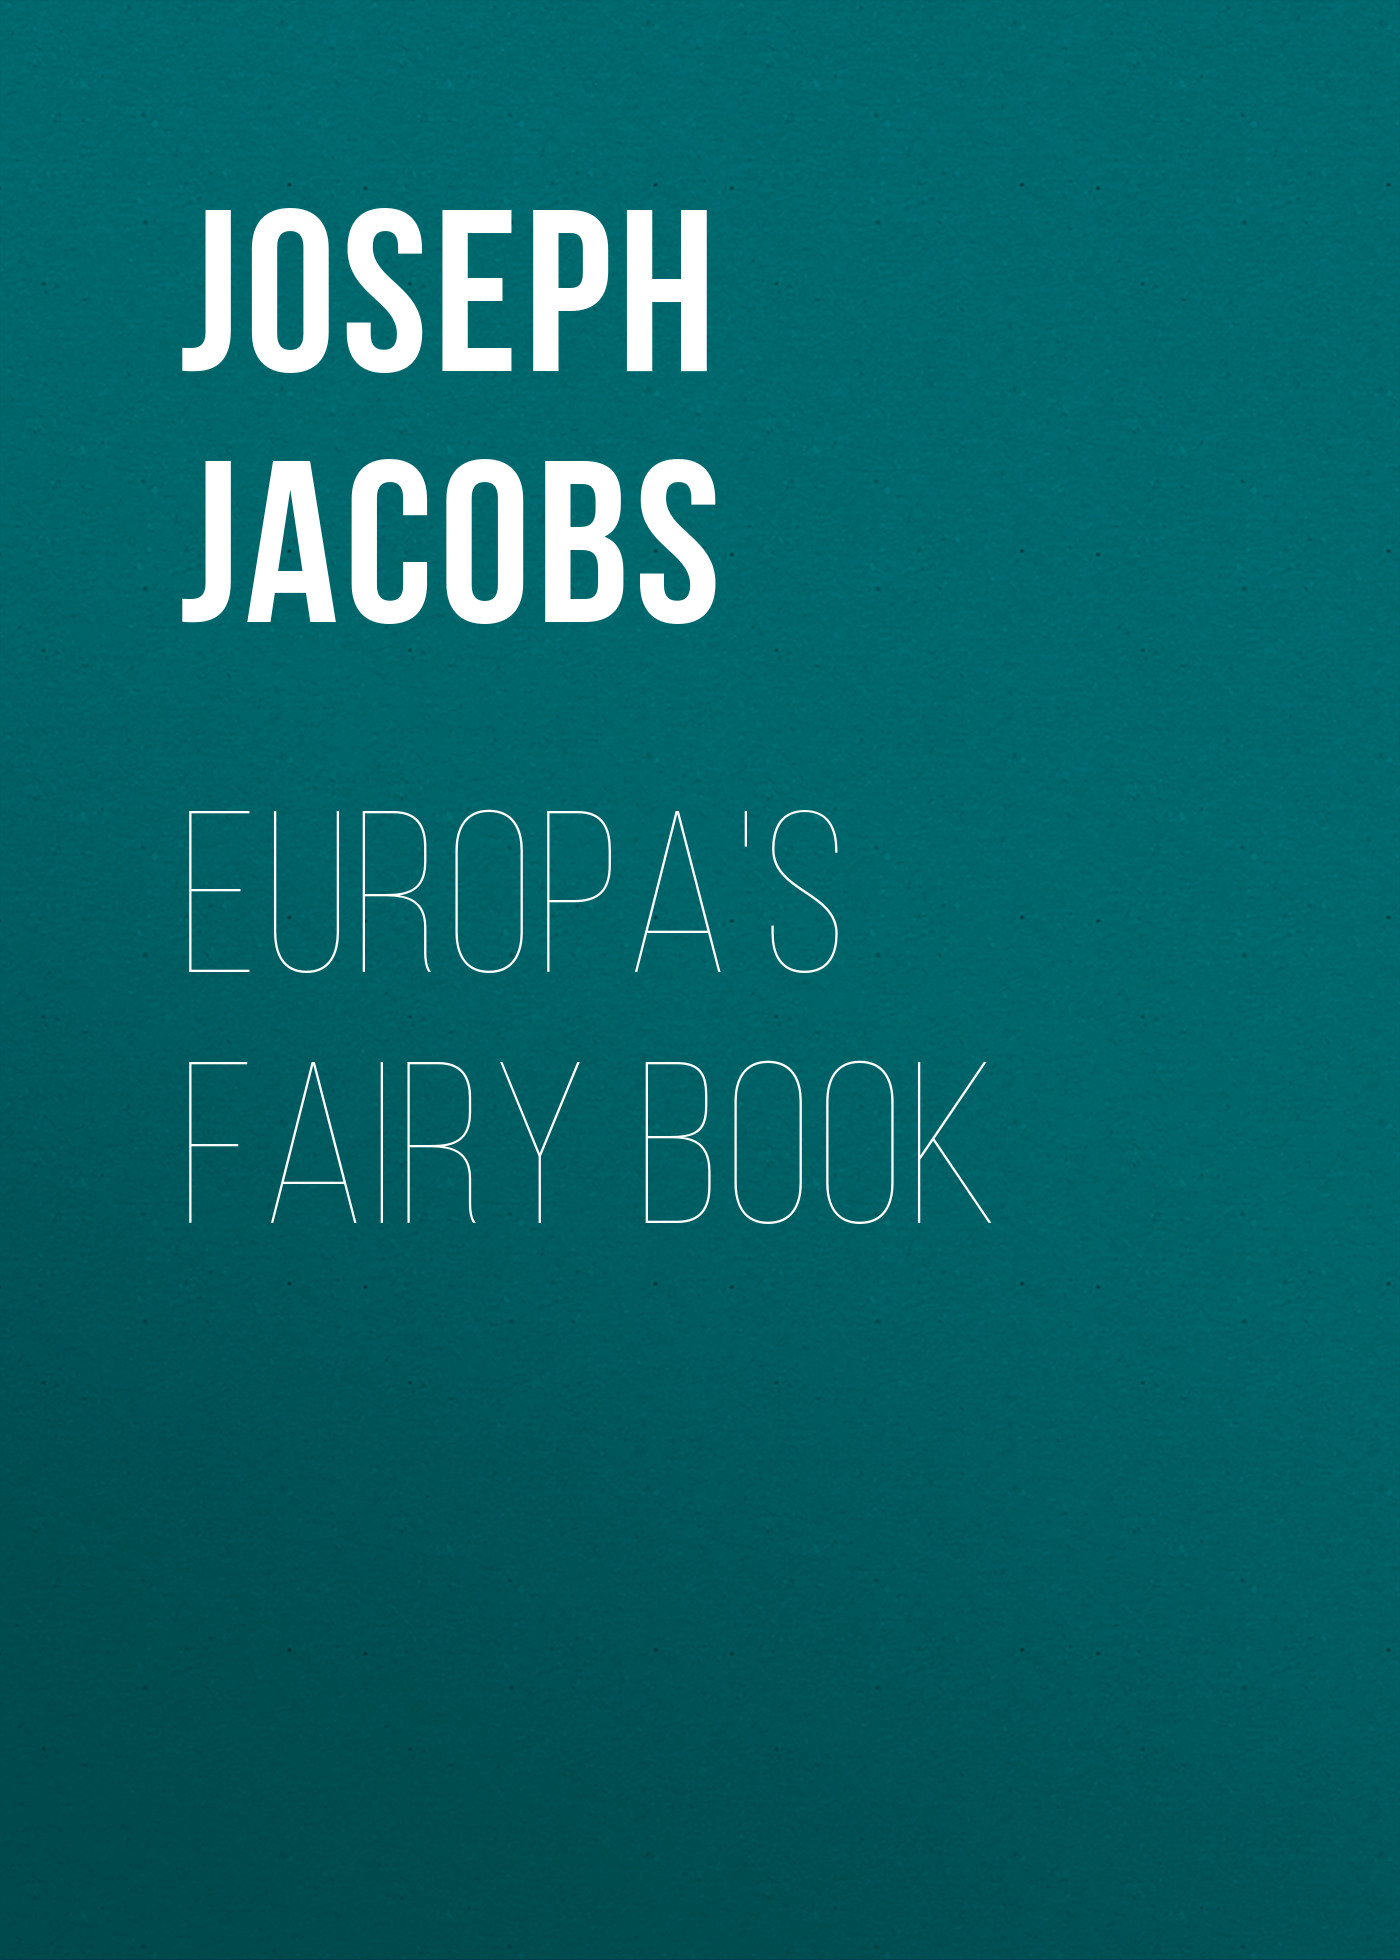 Книга Europa's Fairy Book из серии , созданная Joseph Jacobs, может относится к жанру Сказки, Зарубежная старинная литература, Зарубежная классика, Зарубежные детские книги. Стоимость электронной книги Europa's Fairy Book с идентификатором 36322652 составляет 0 руб.